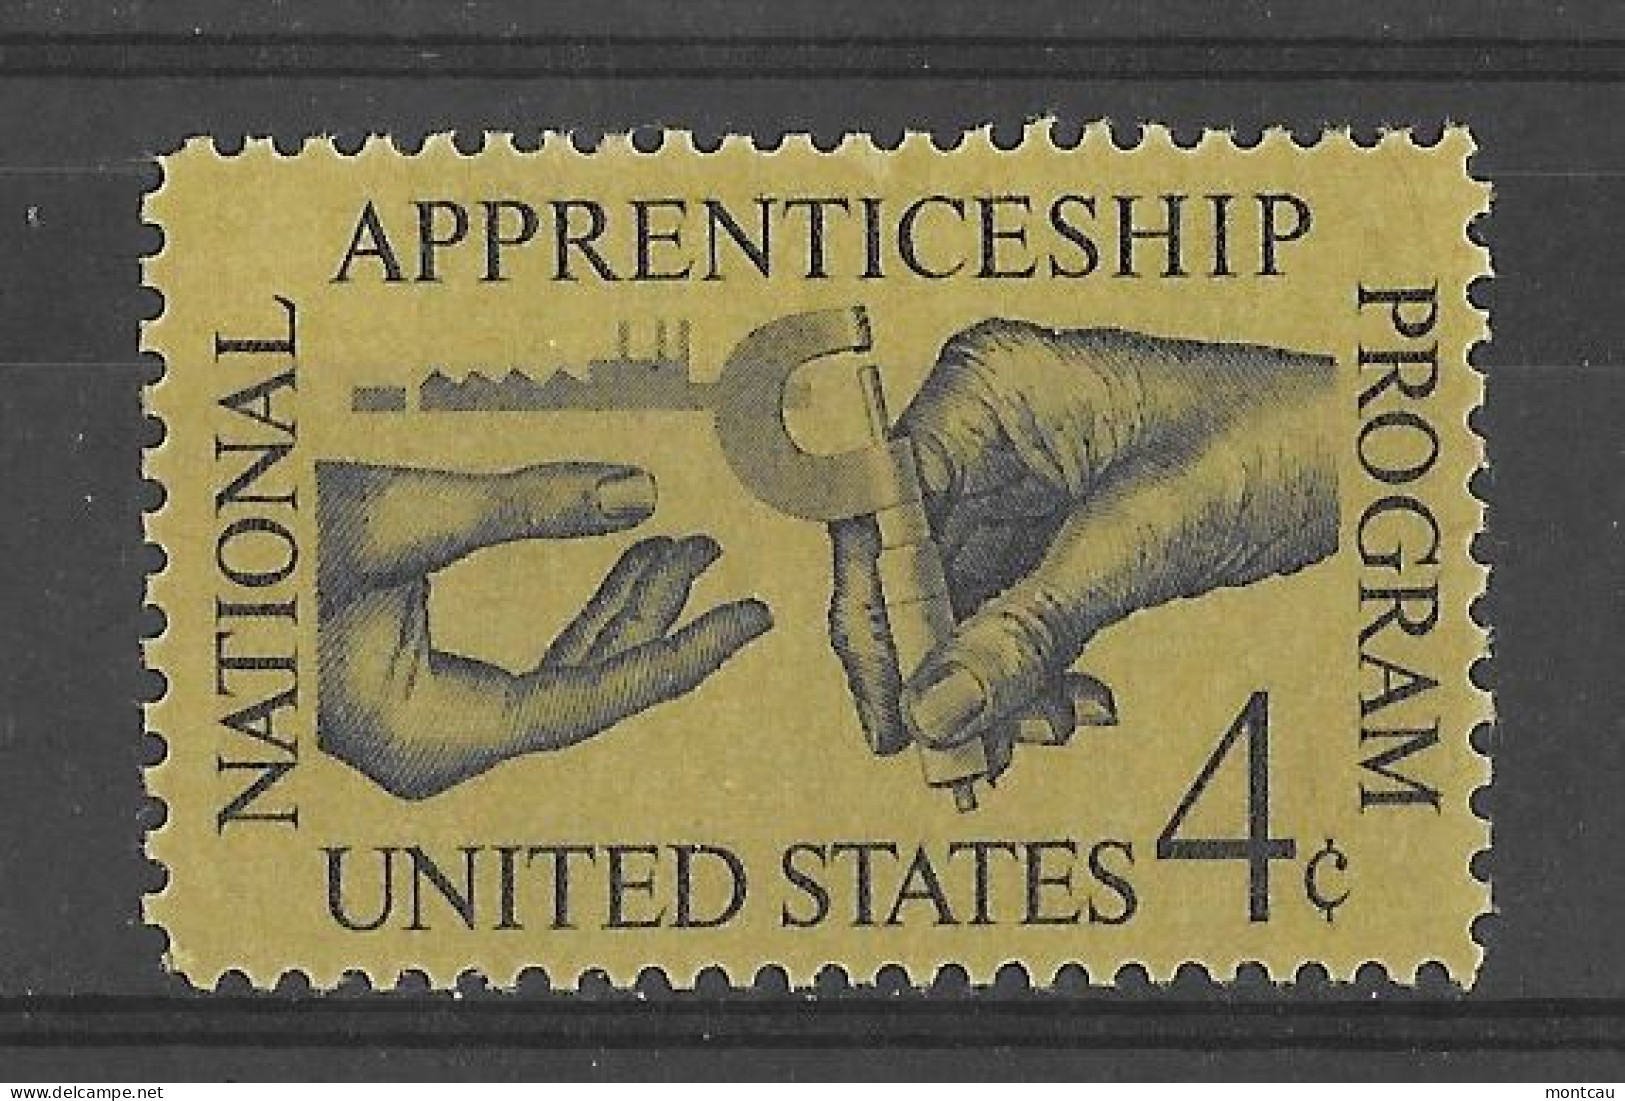 USA 1962.  Apprenticeship Sc 1201  (**) - Ungebraucht